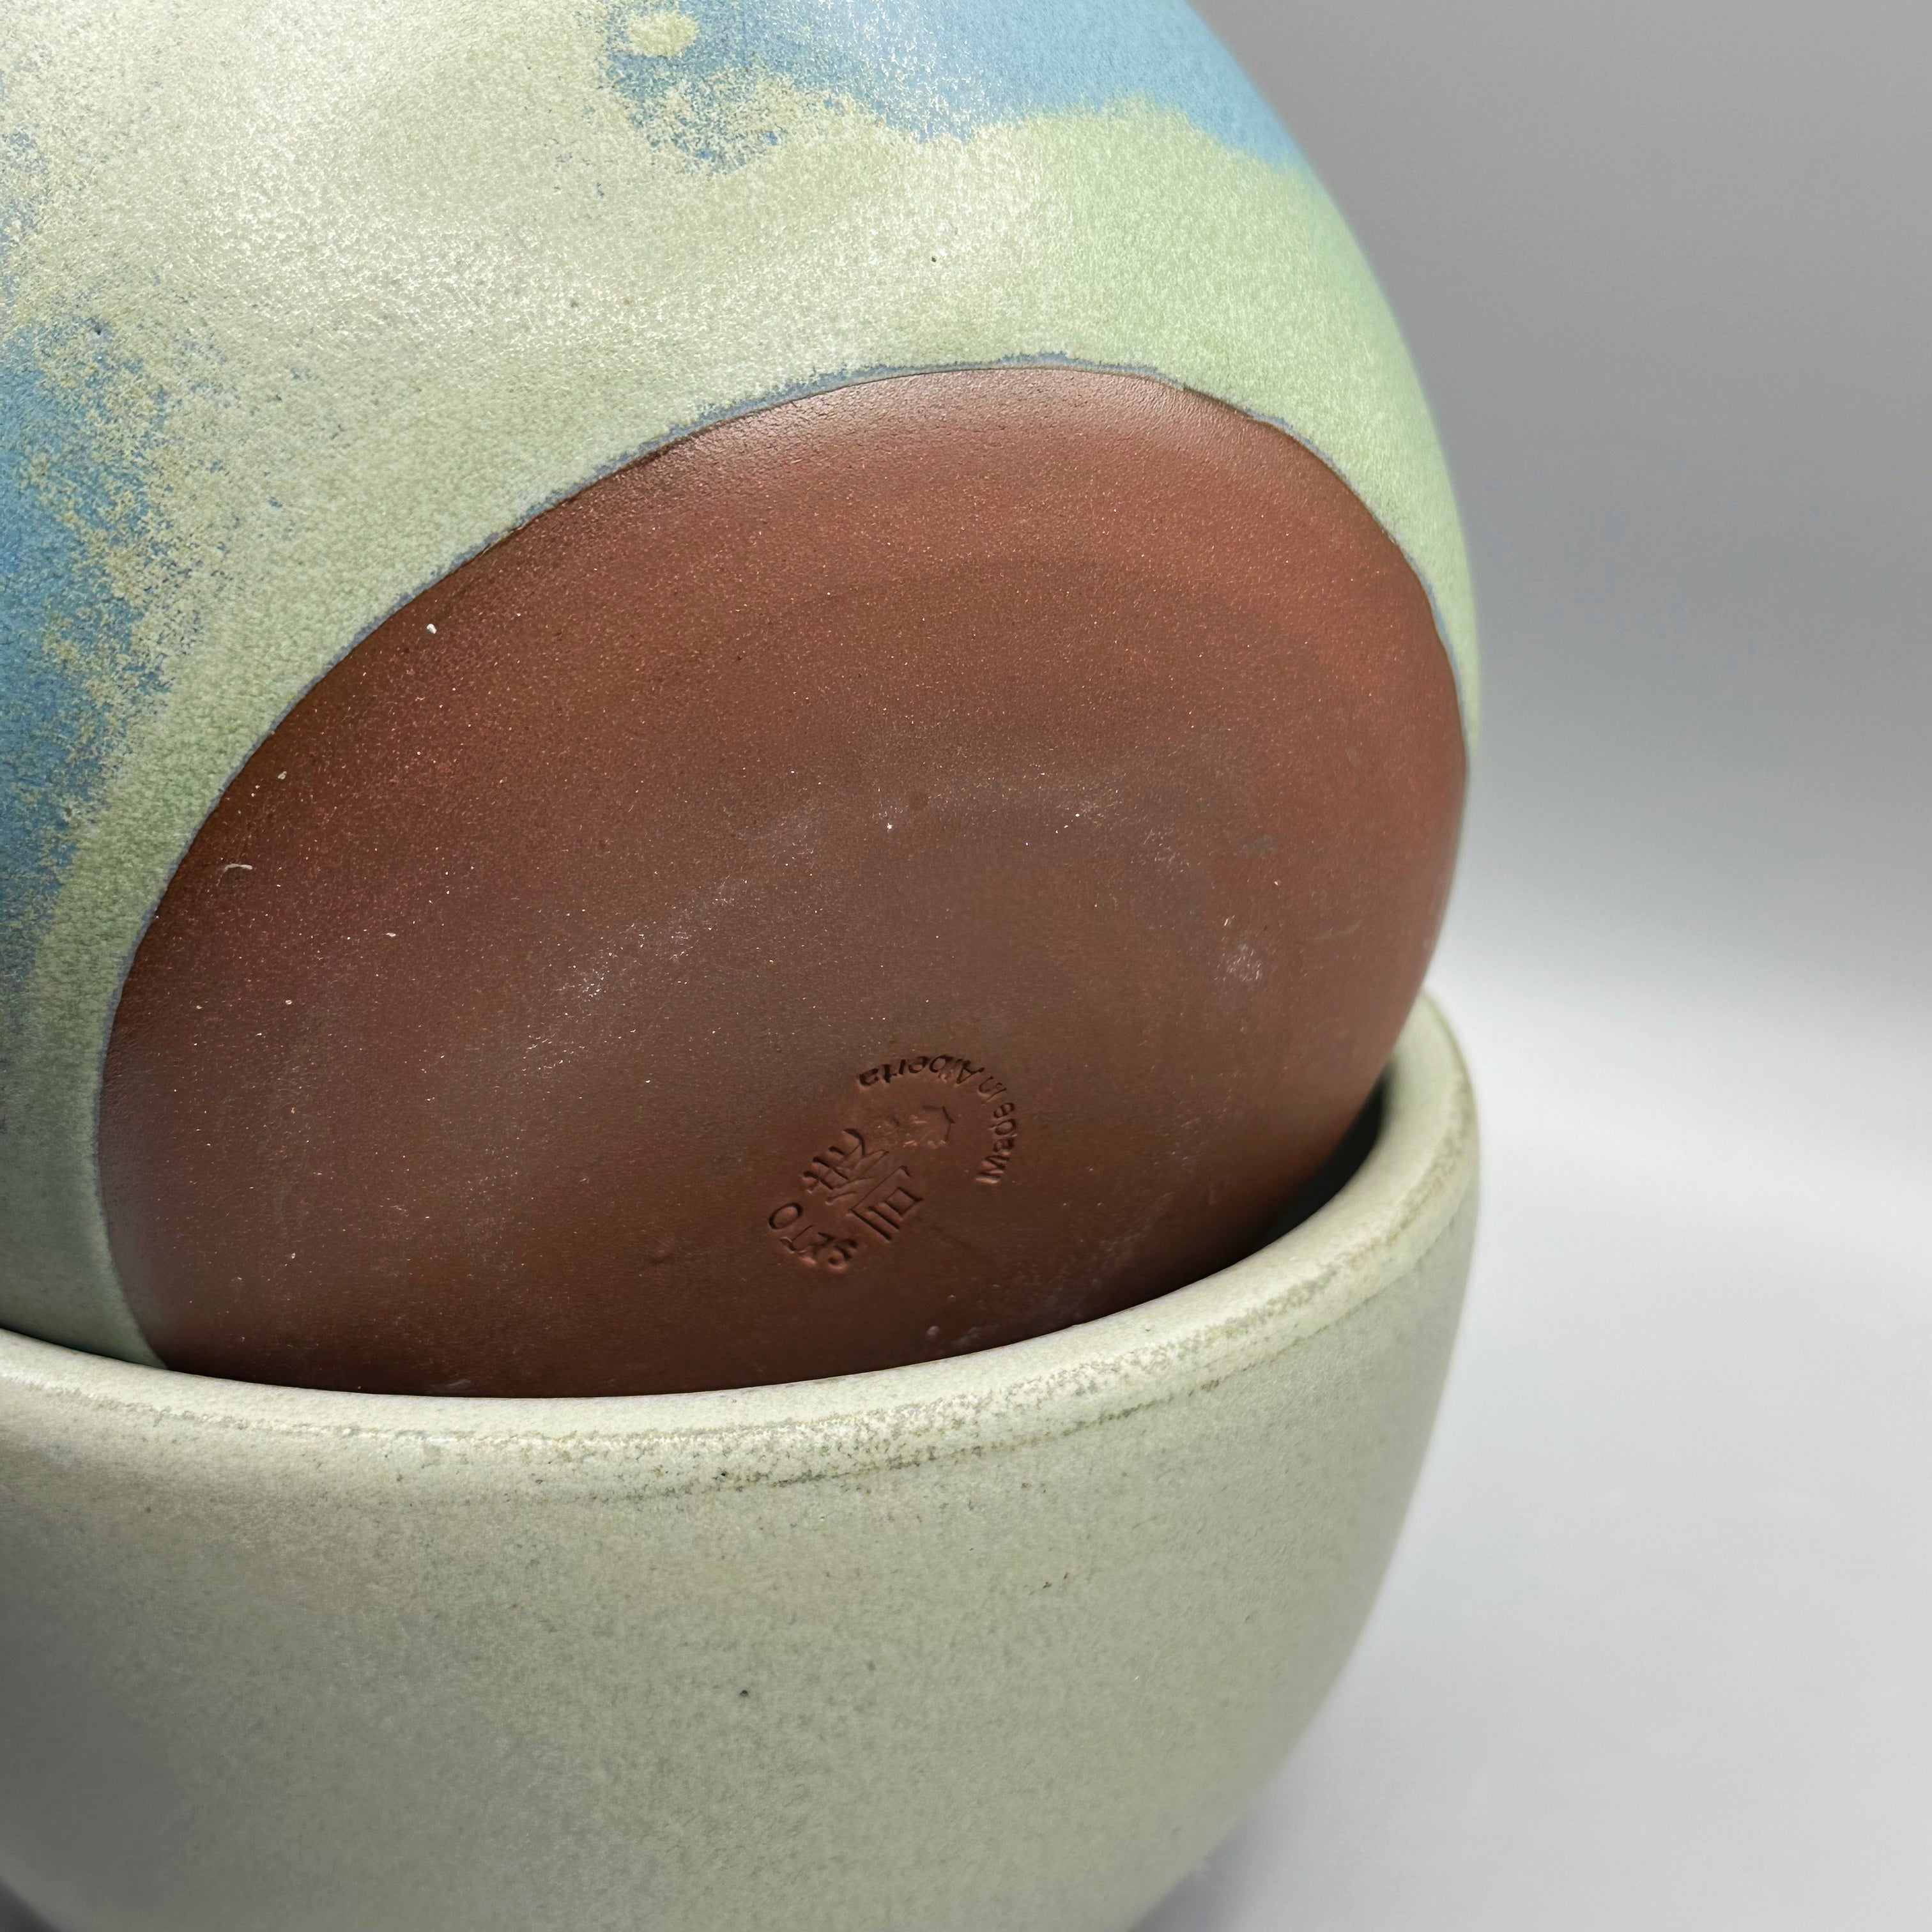 Ceramic Bowl | Medium | Blue